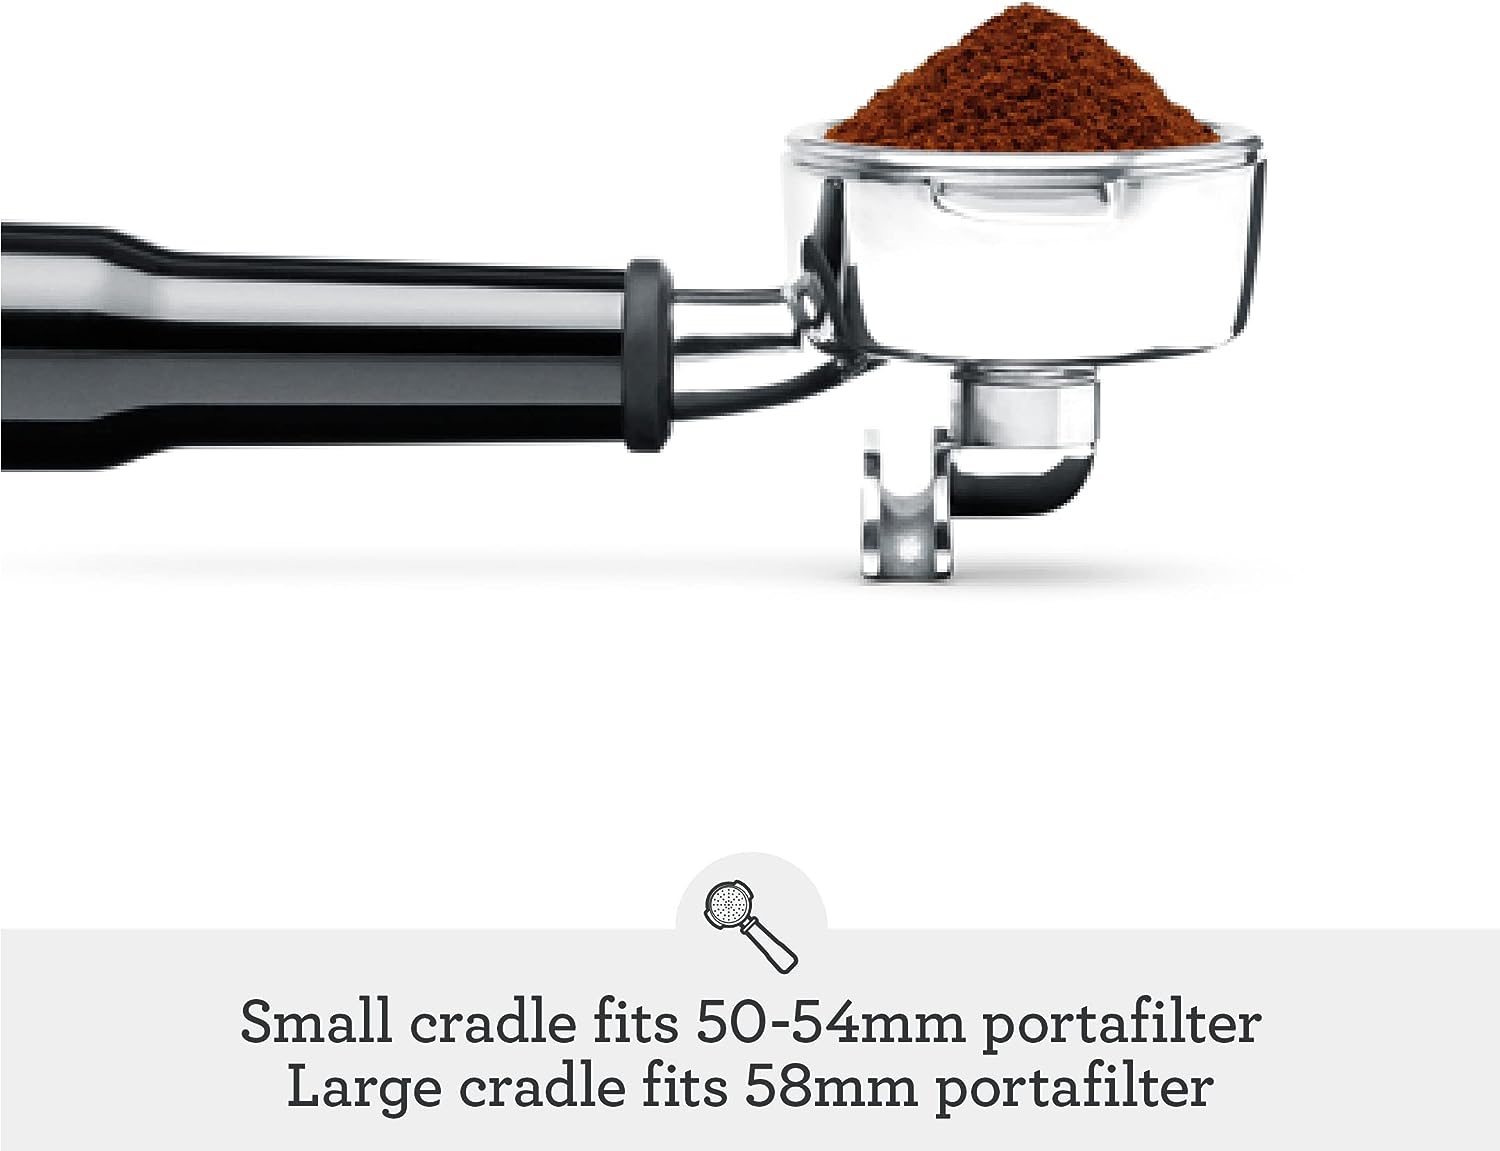 Breville Smart Grinder Pro Coffee Bean Grinder Review